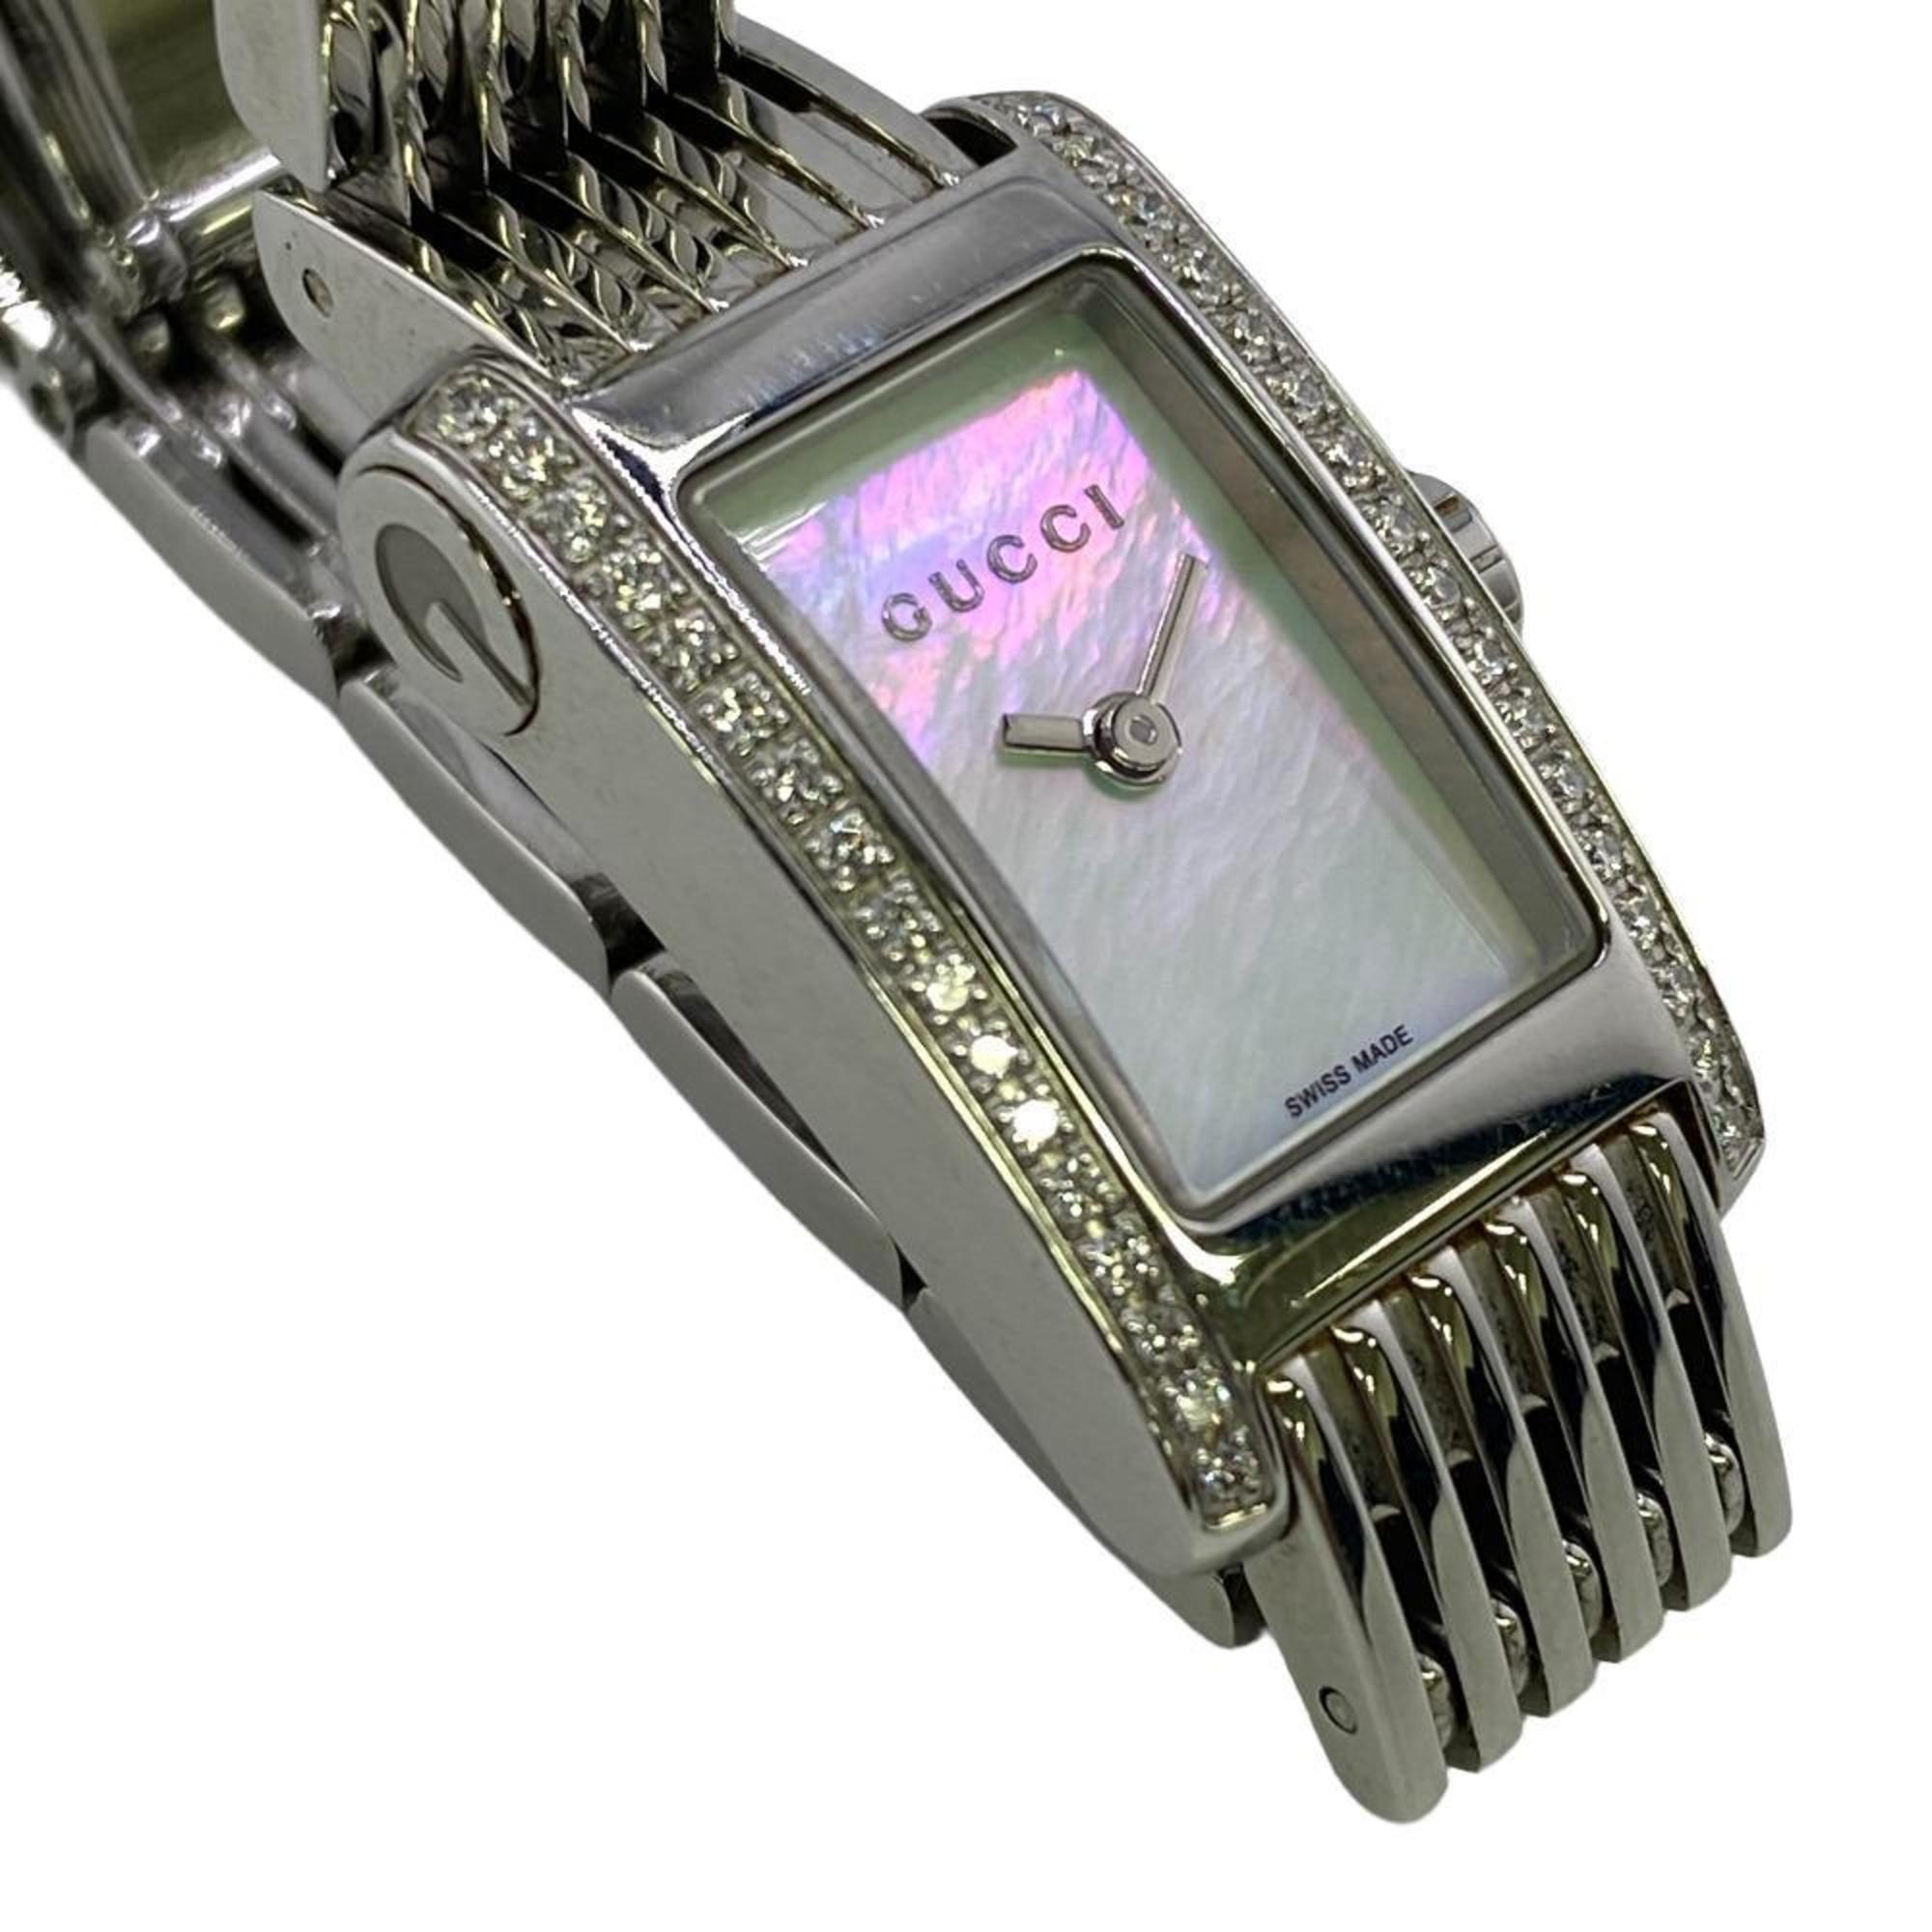 GUCCI 8600L G Metro Quartz Side Diamond Watch Silver Women's Z0006237